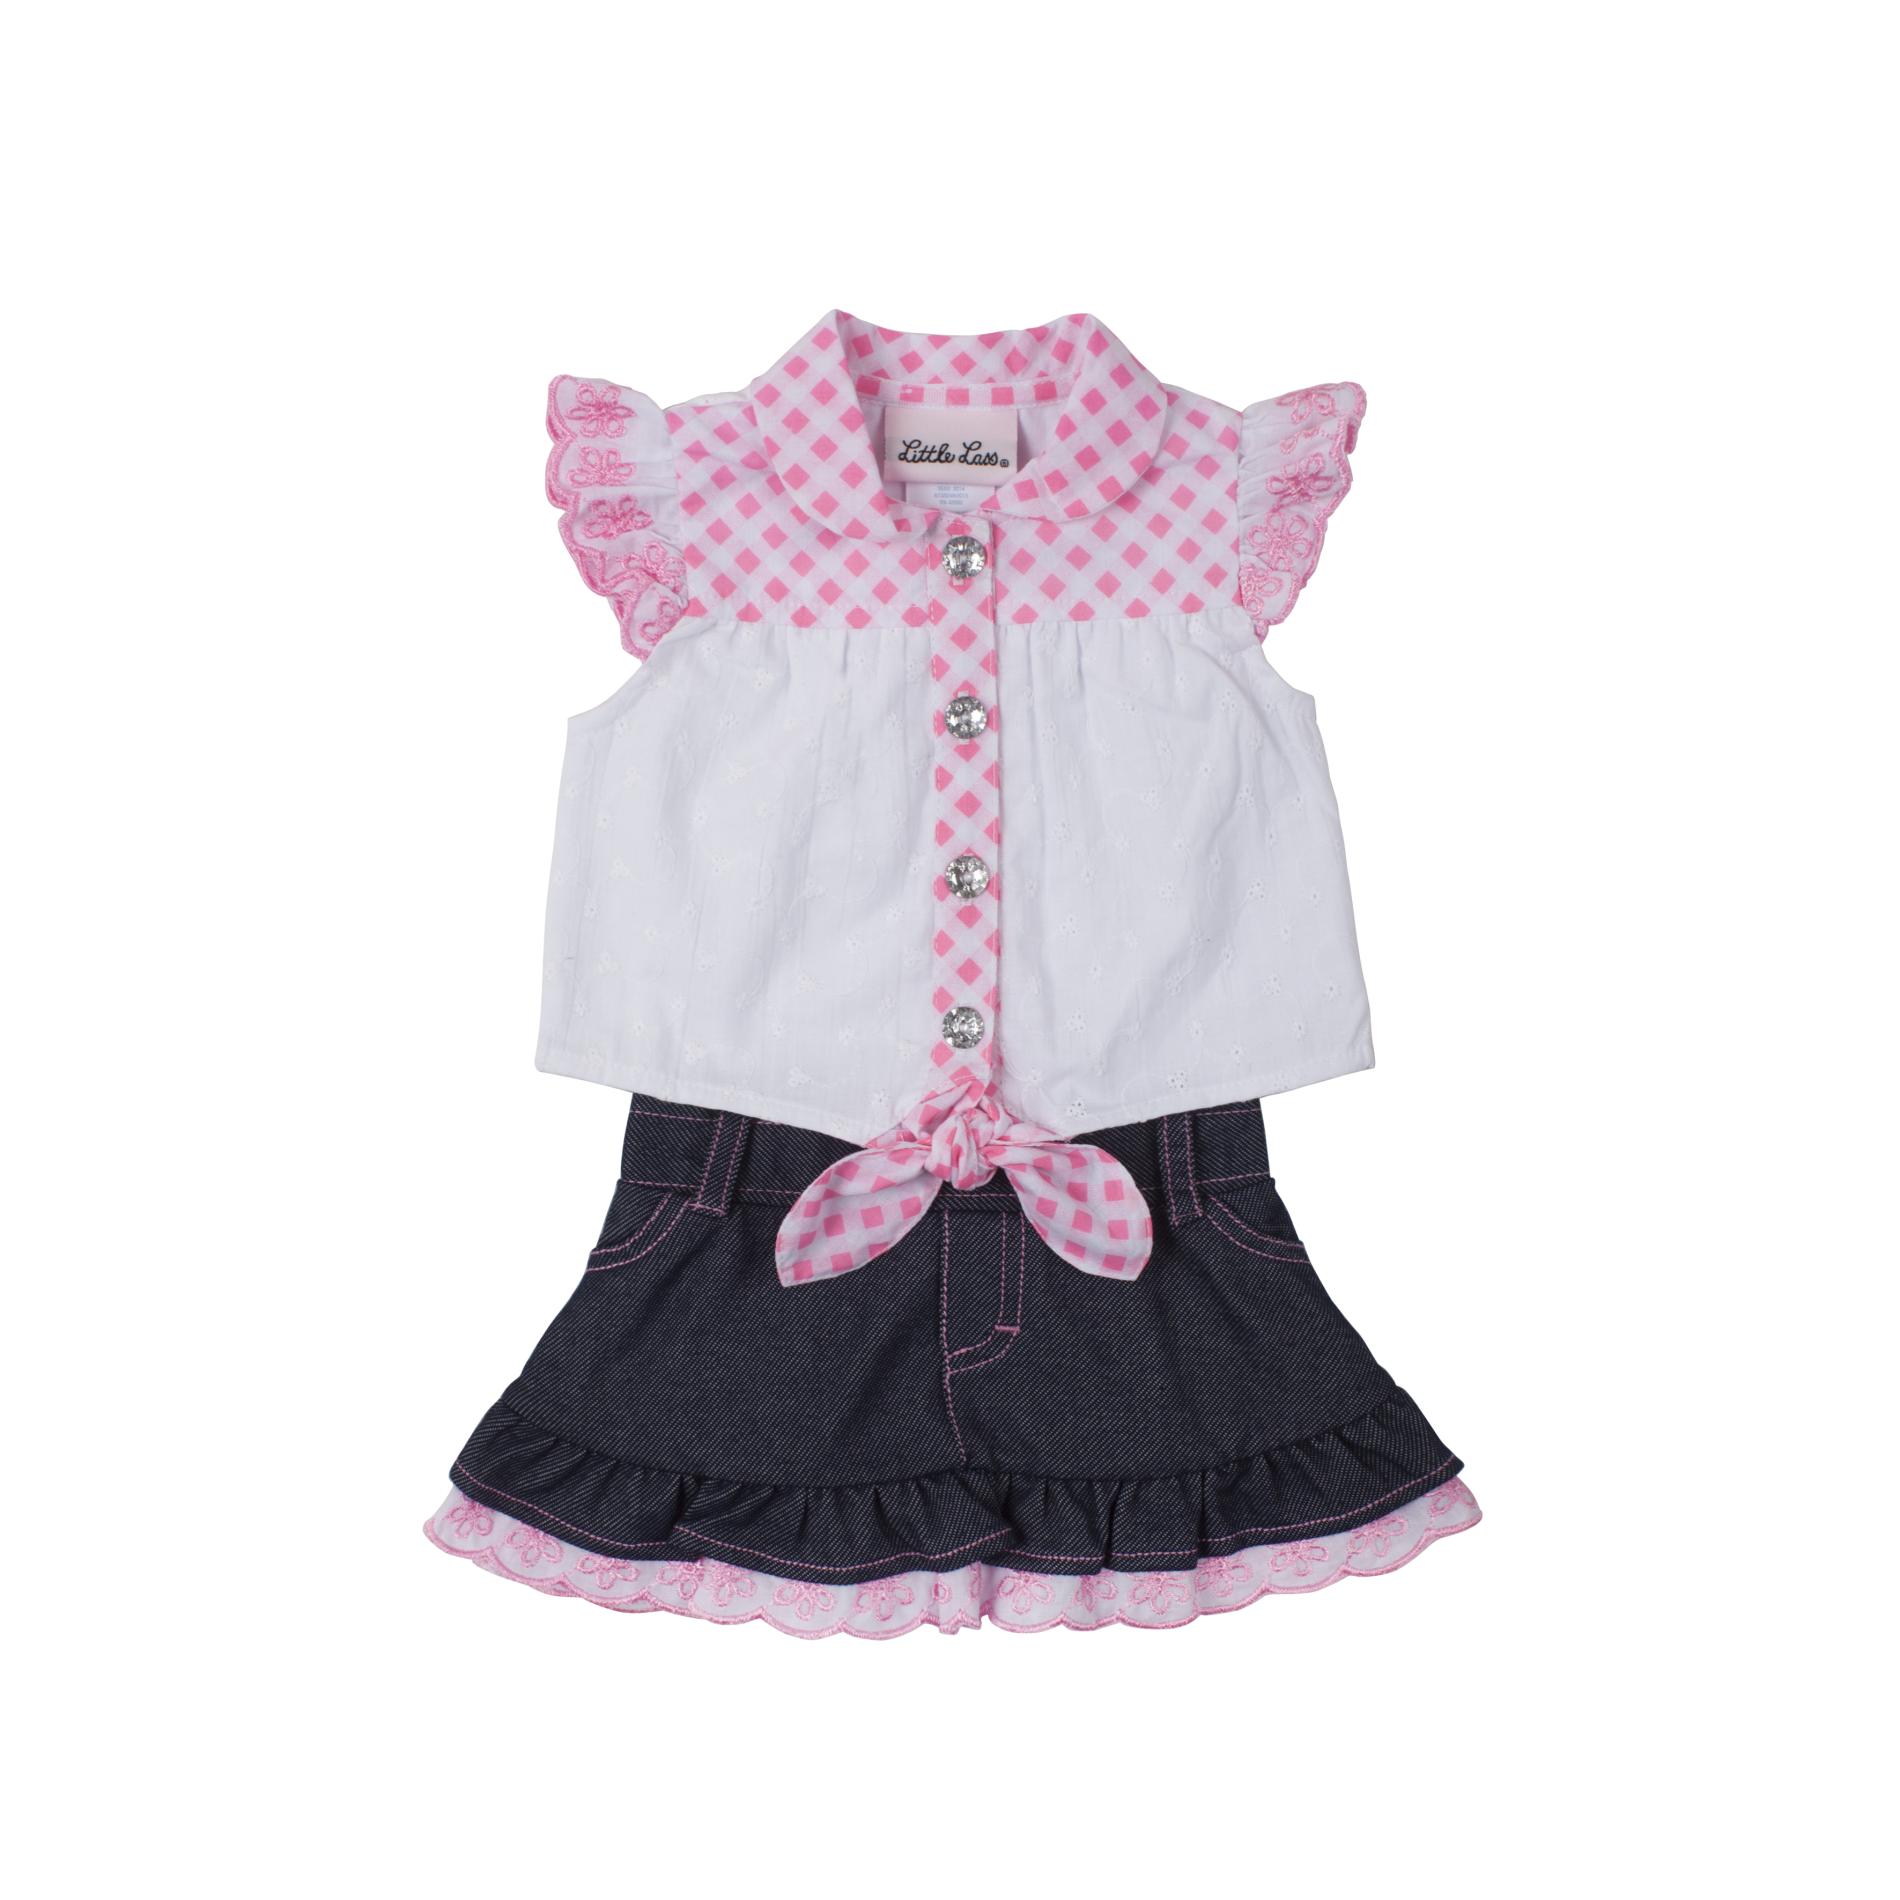 Little Lass Infant & Toddler Girl's Sleeveless Top & Skirt - Gingham